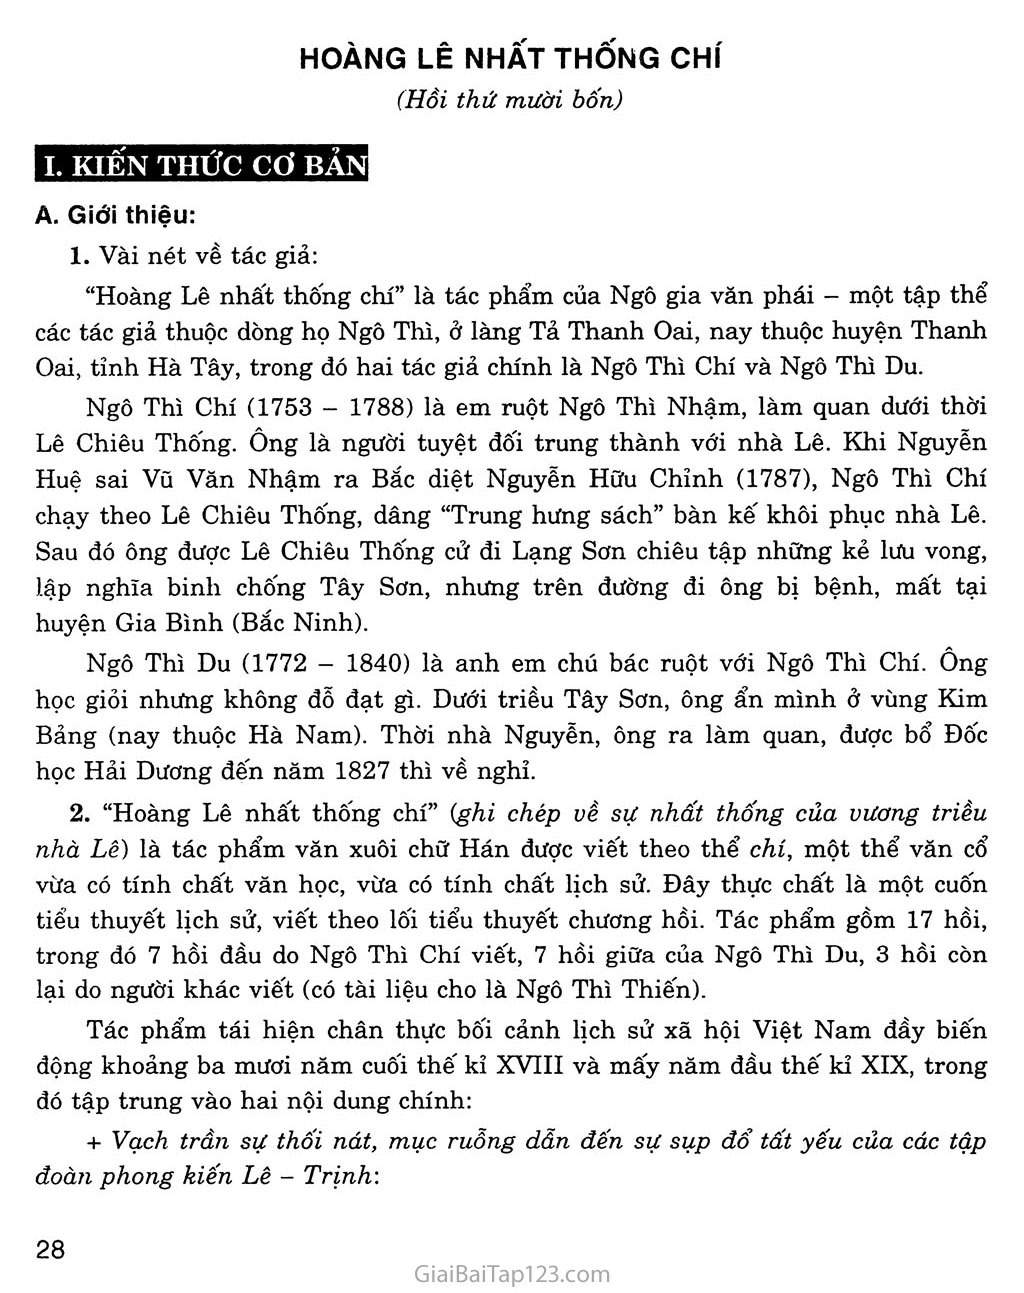 Hoàng Lê nhất thống chí - Hồi thứ mười bốn (trích) trang 1